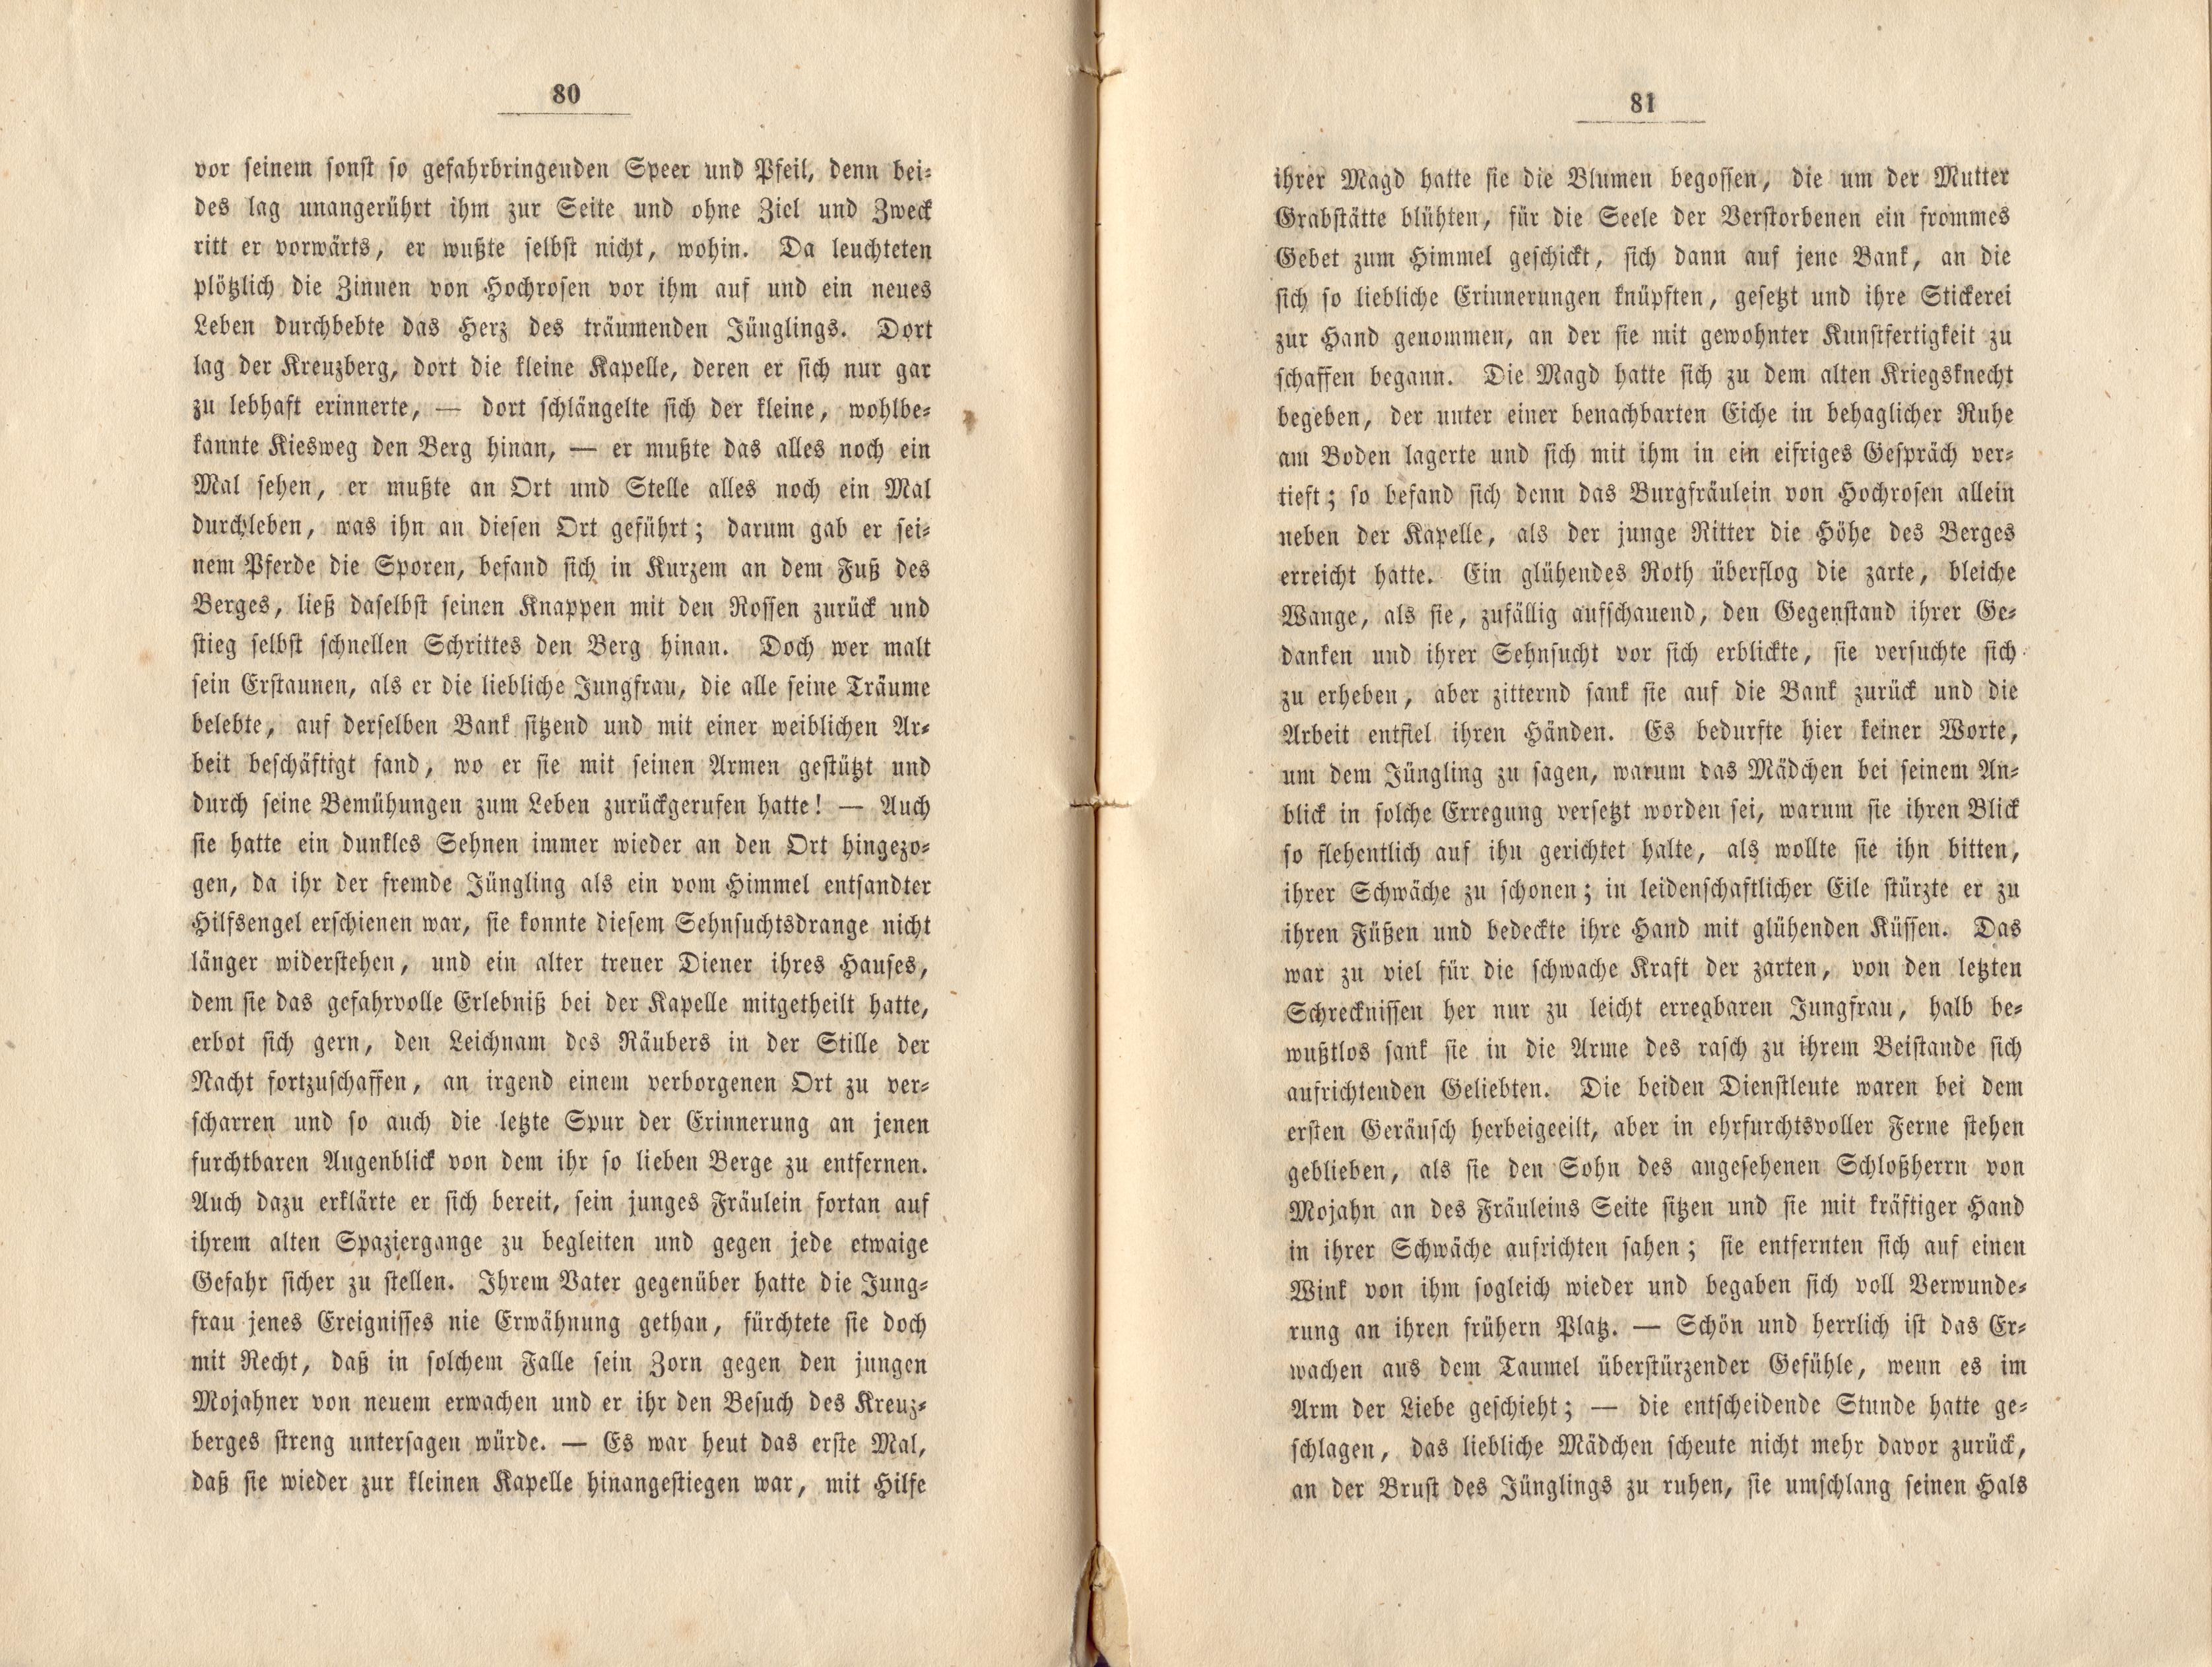 Felliner Blätter (1859) | 41. (80-81) Main body of text